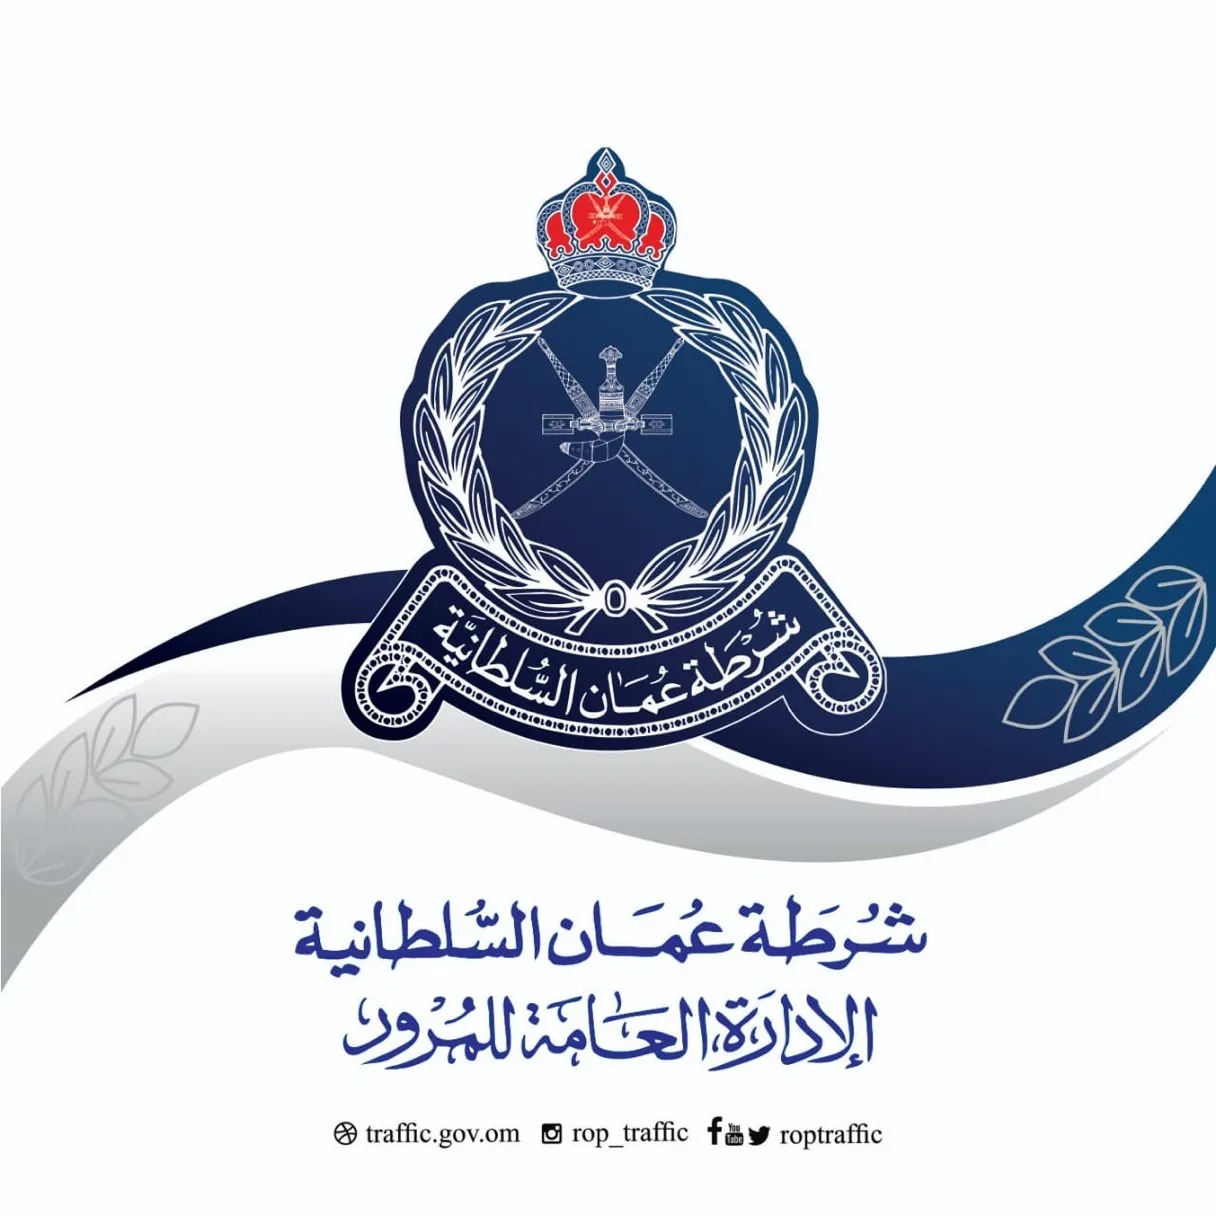 تجديد المركبات ودفع المخالفات وخدمات شرطة عمان السلطانية الأخرى